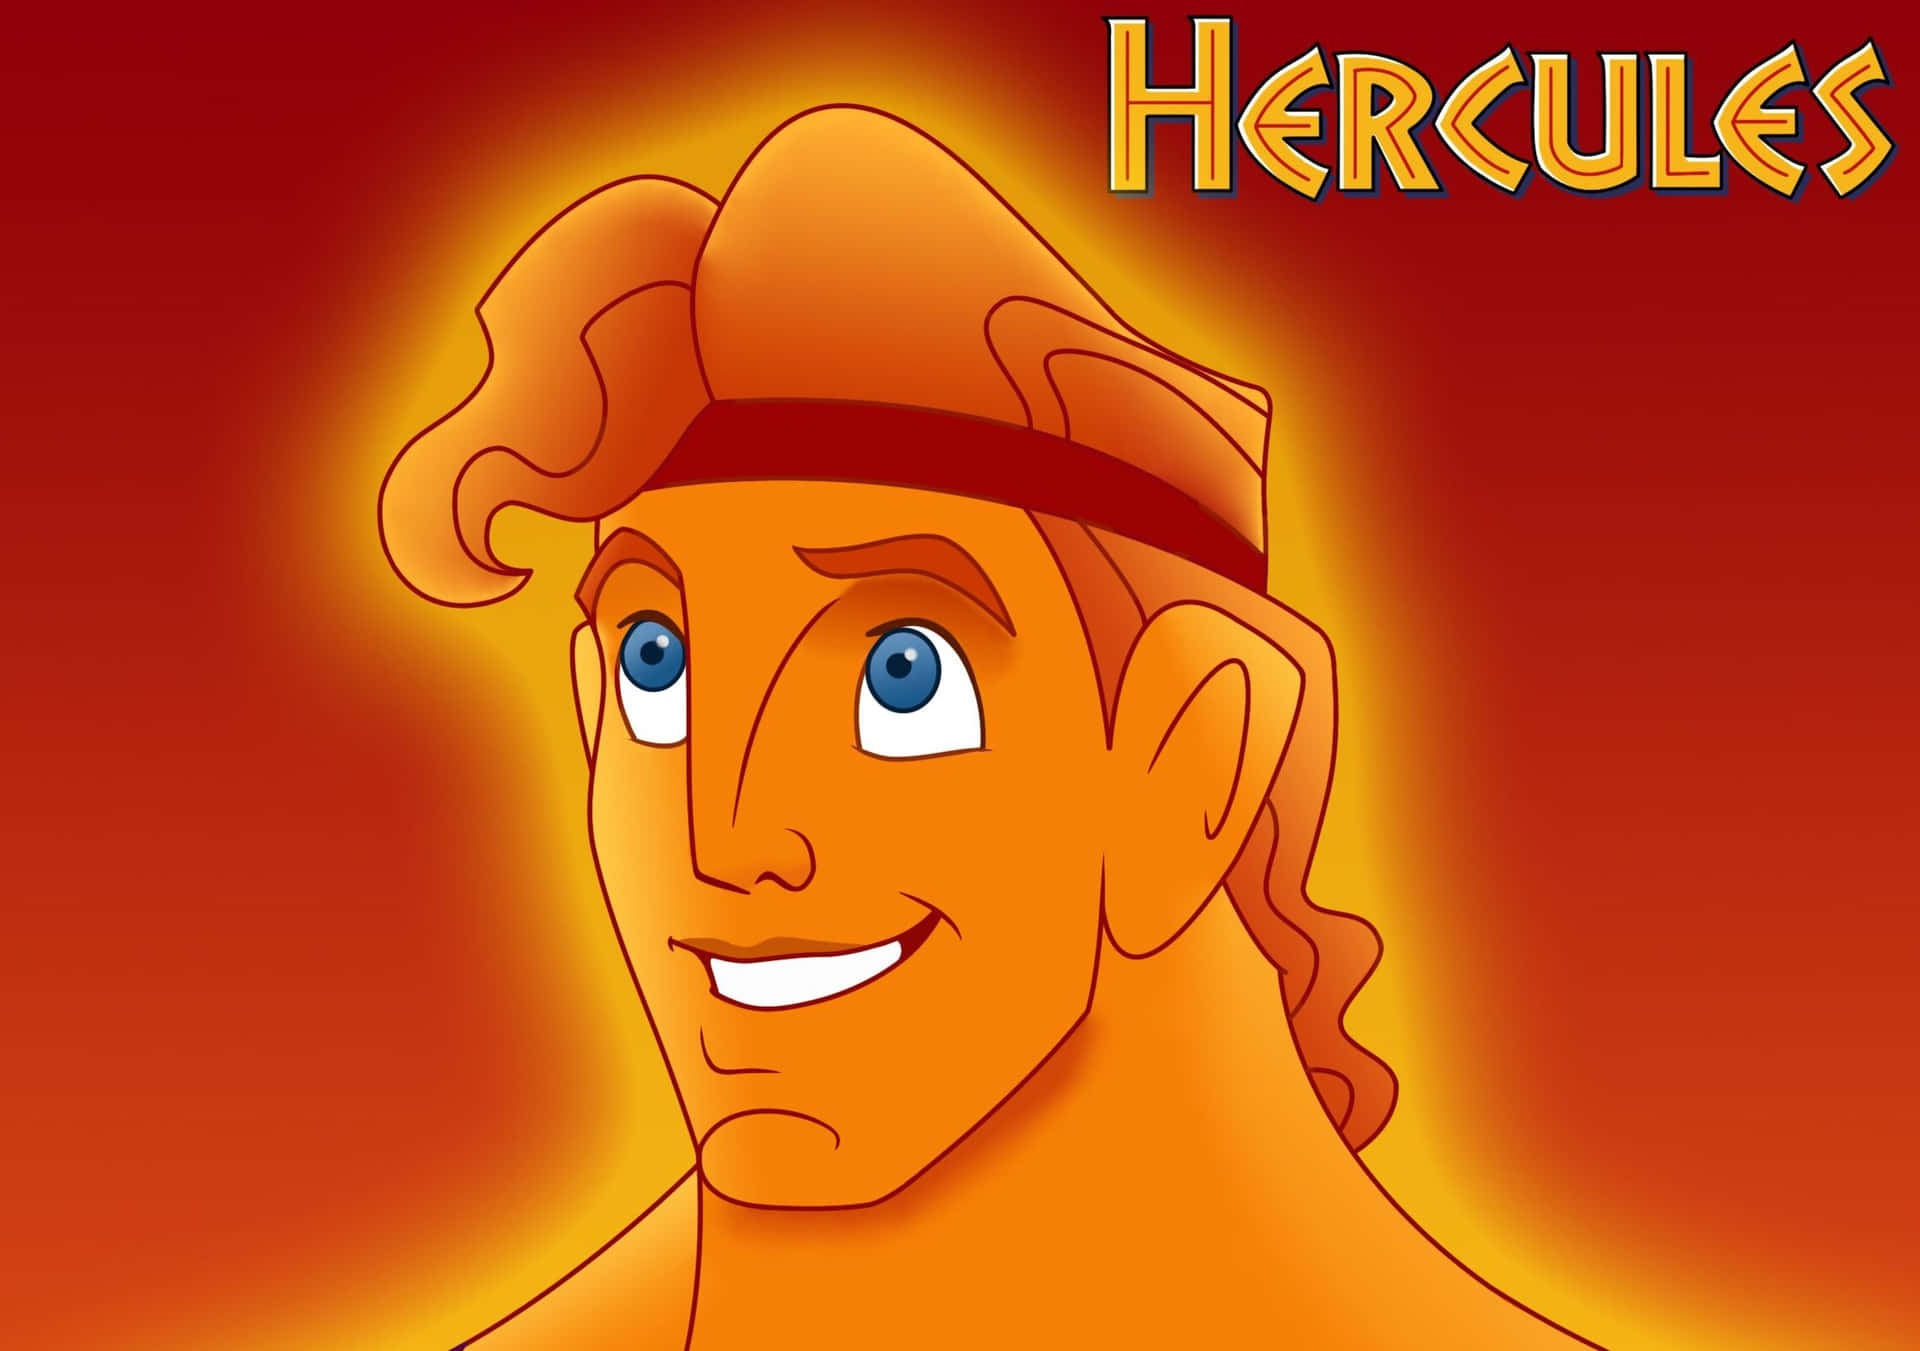 Herculesden Animerade Filmen